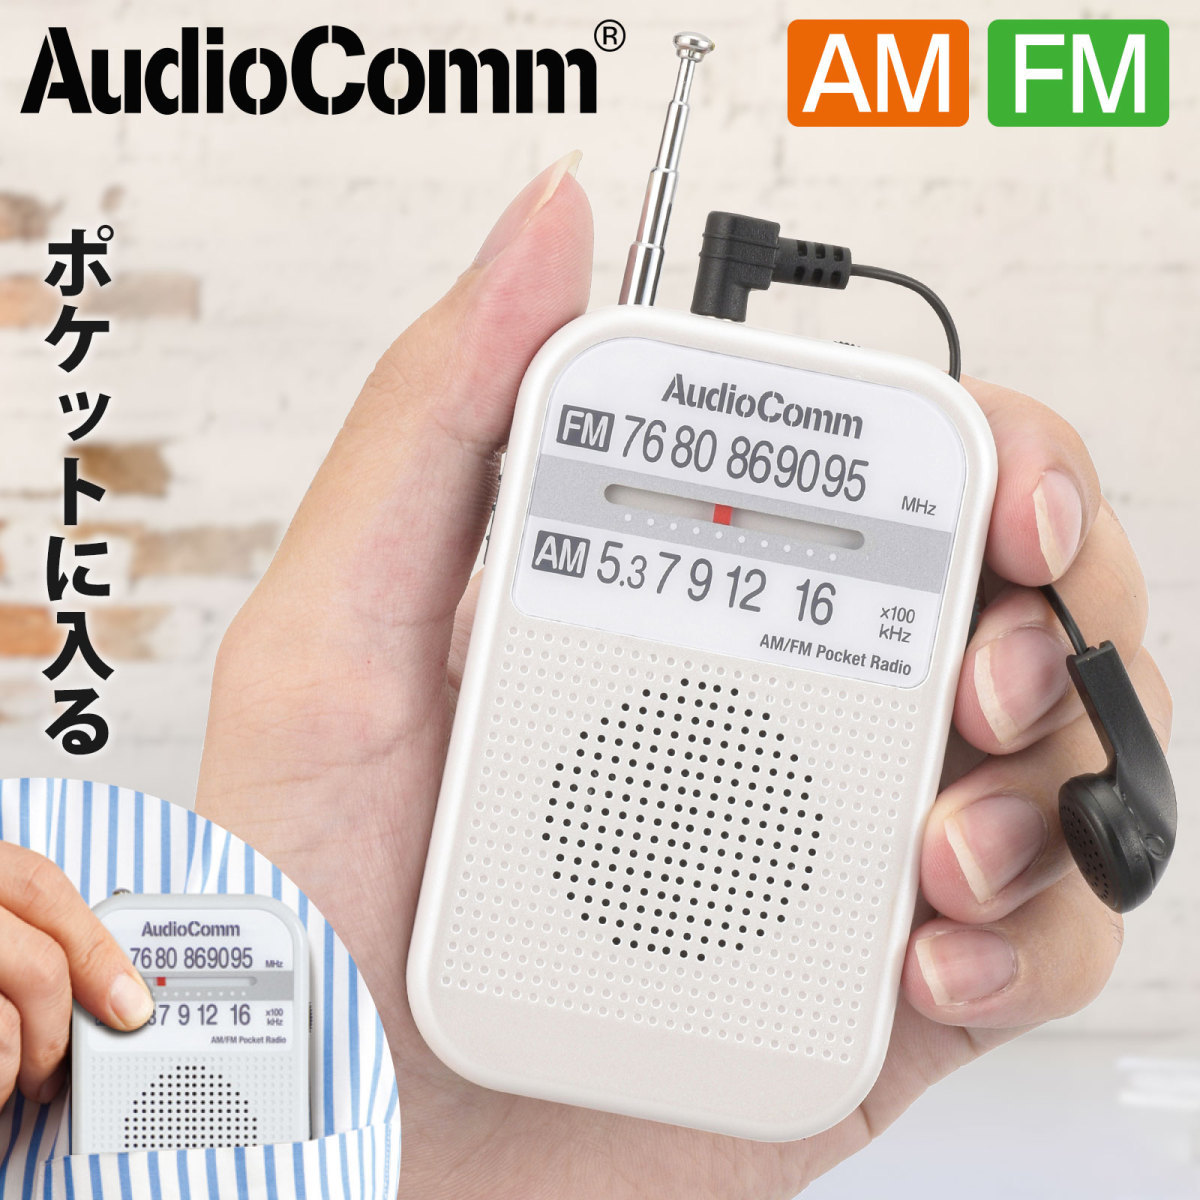 AudioComm AM FMポケットラジオ ホワイト RAD-P132N-W 03-5521 オーム電機 超美品